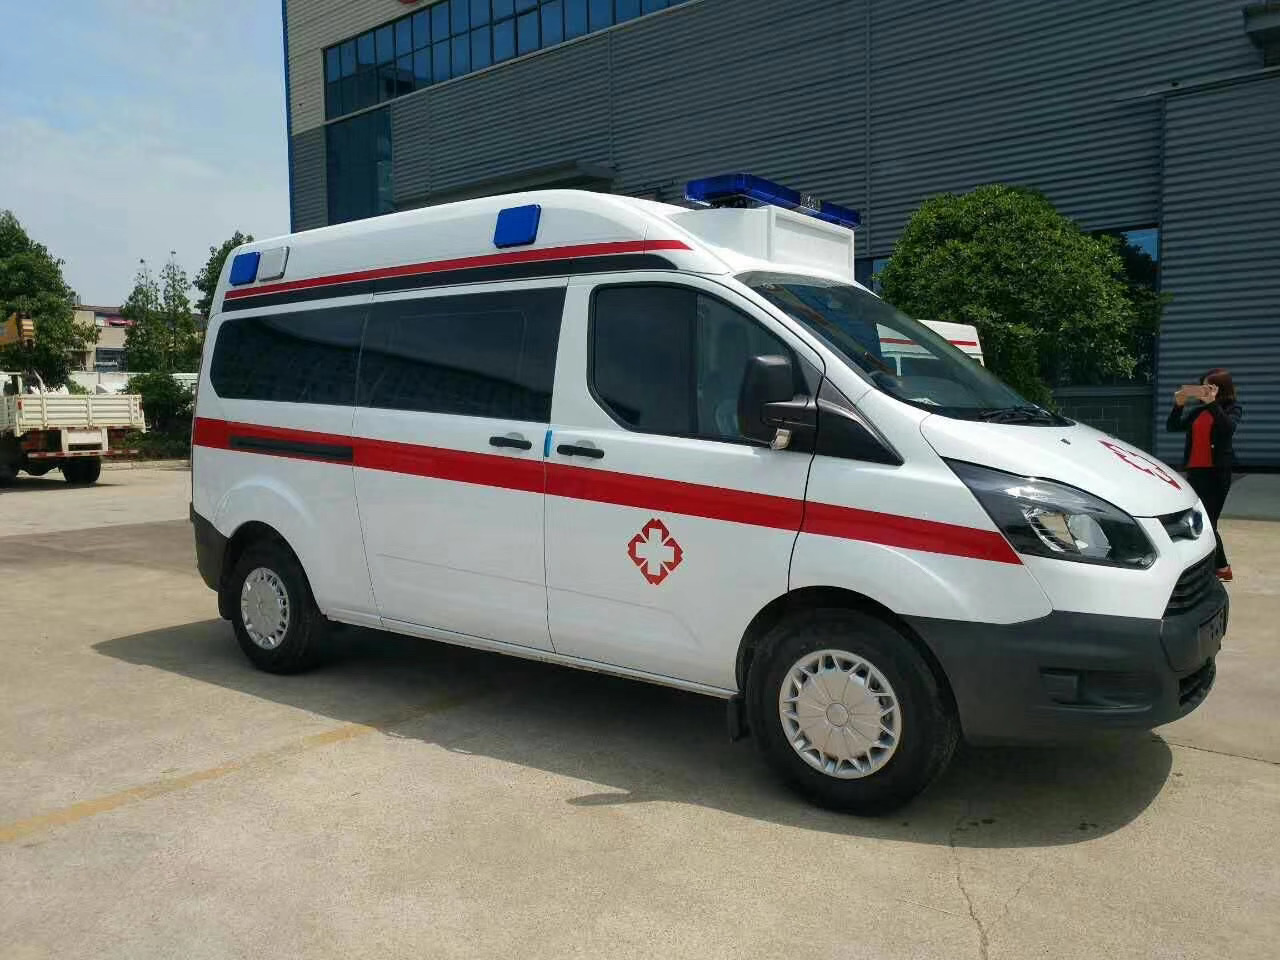 武城县出院转院救护车